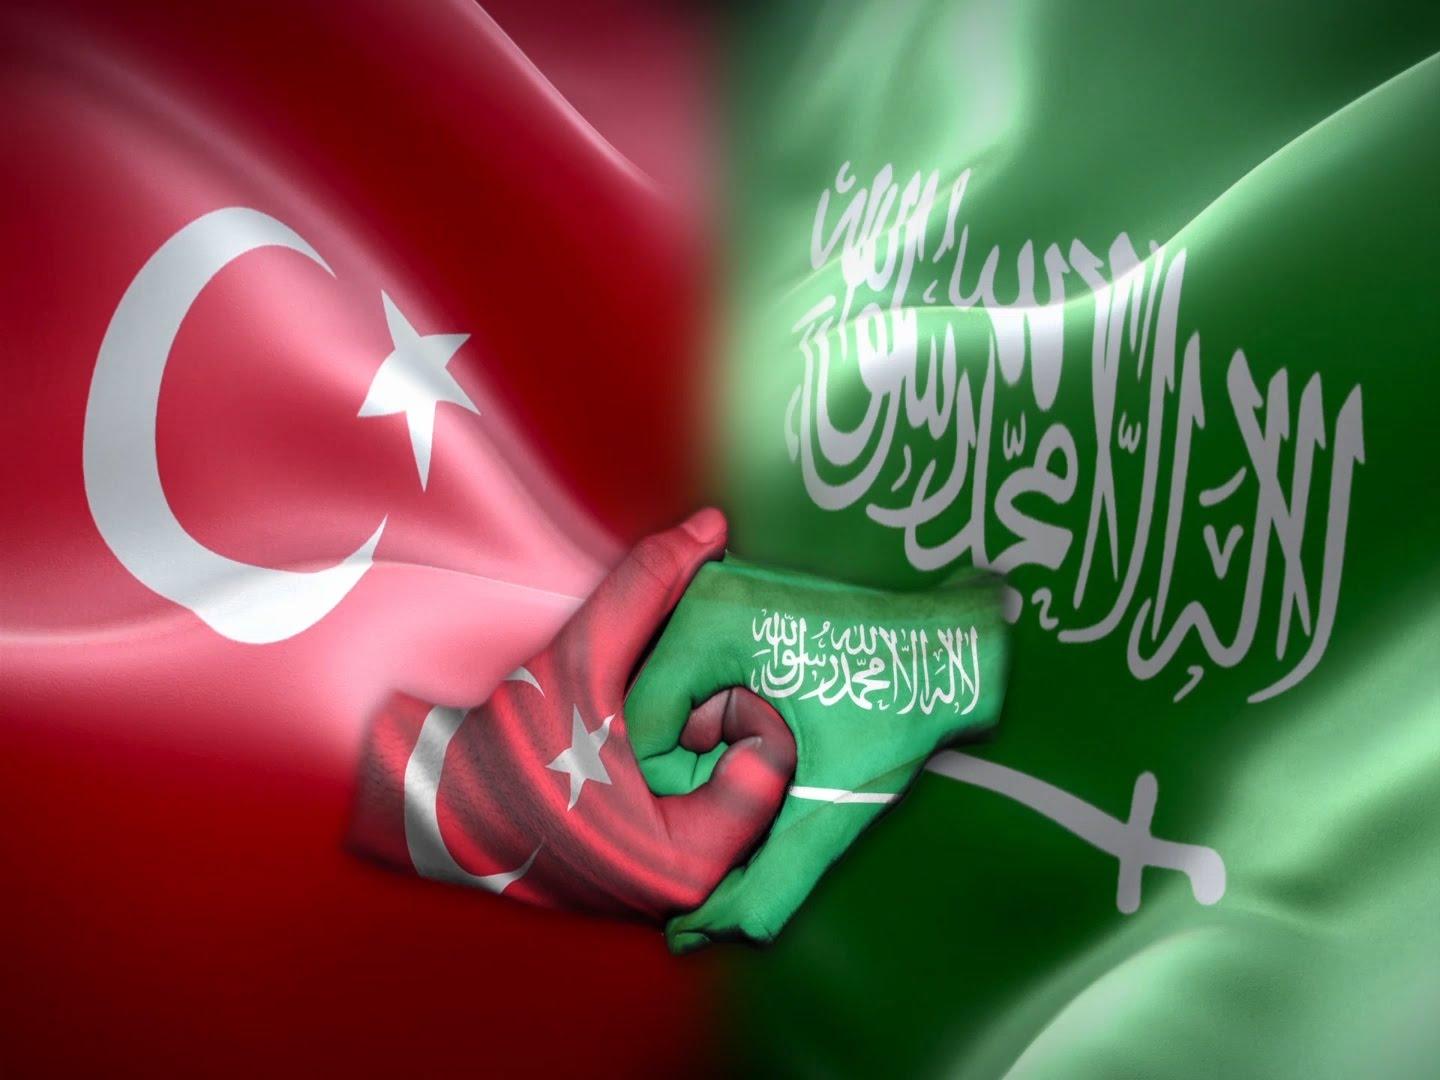 الشنقيطي: تحالف الخليج مع تركيا يسمح بالاستغناء عن الحماية الأميركية